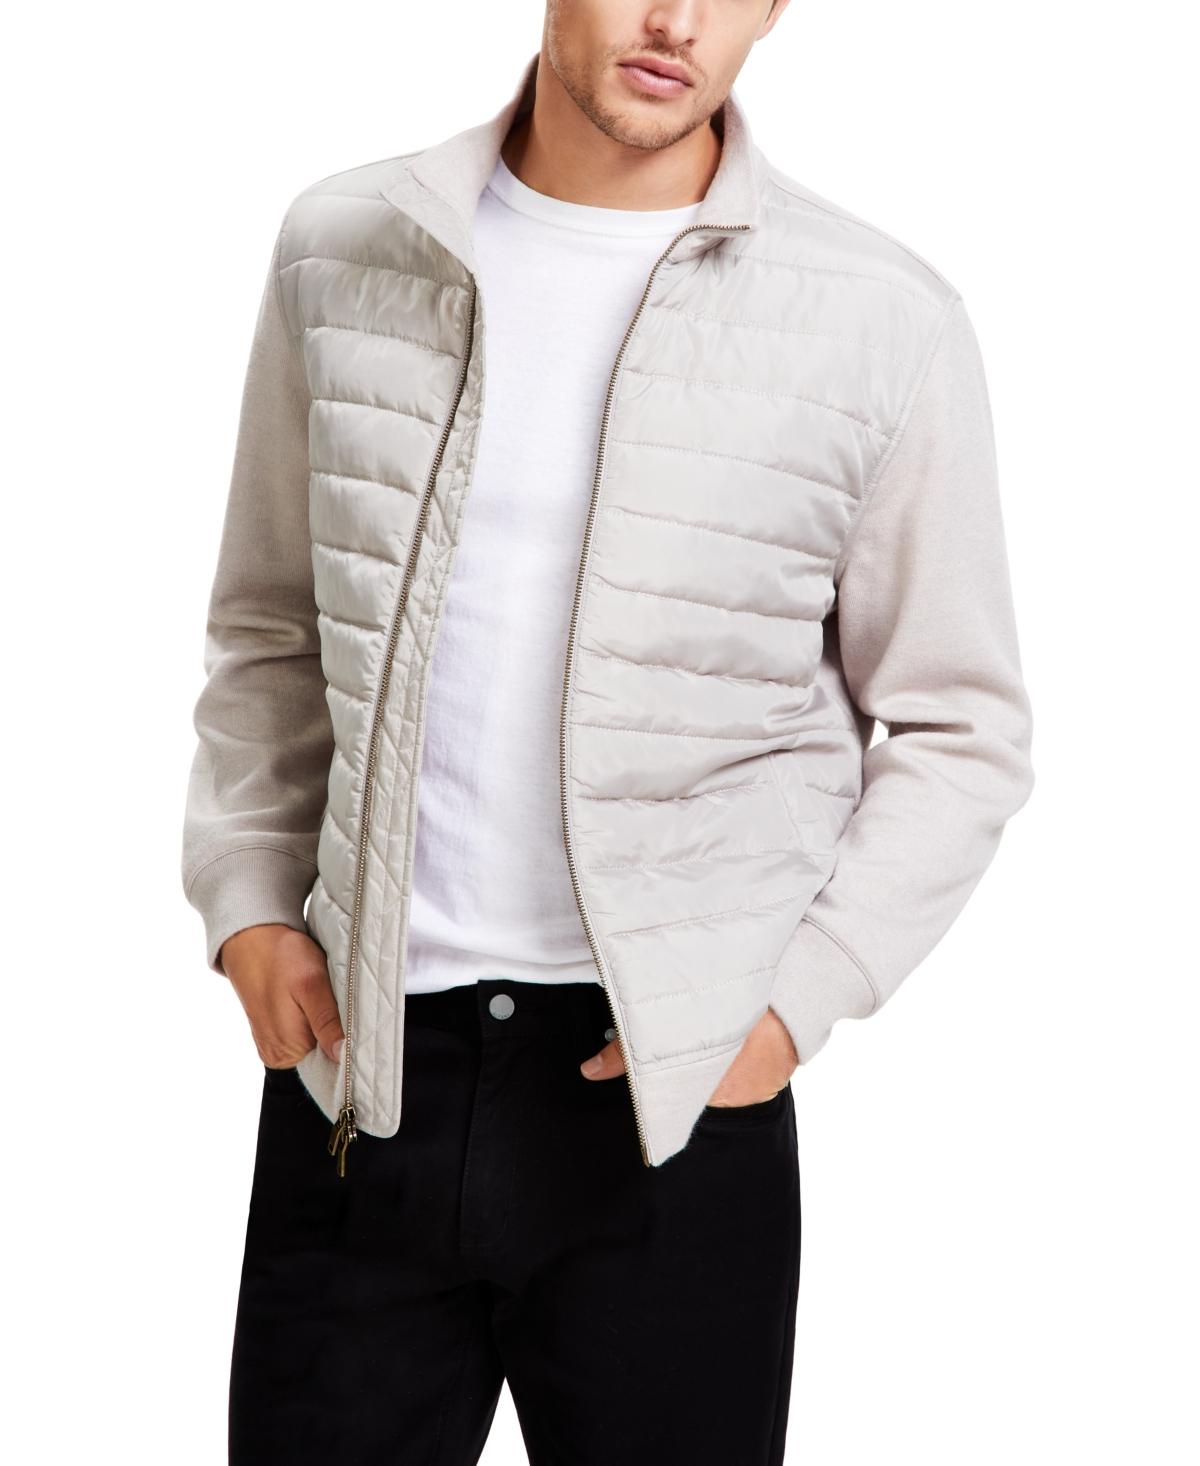 Alfani Men's Zip-Front Sweater Jacket, Created for Macy's - Macy's